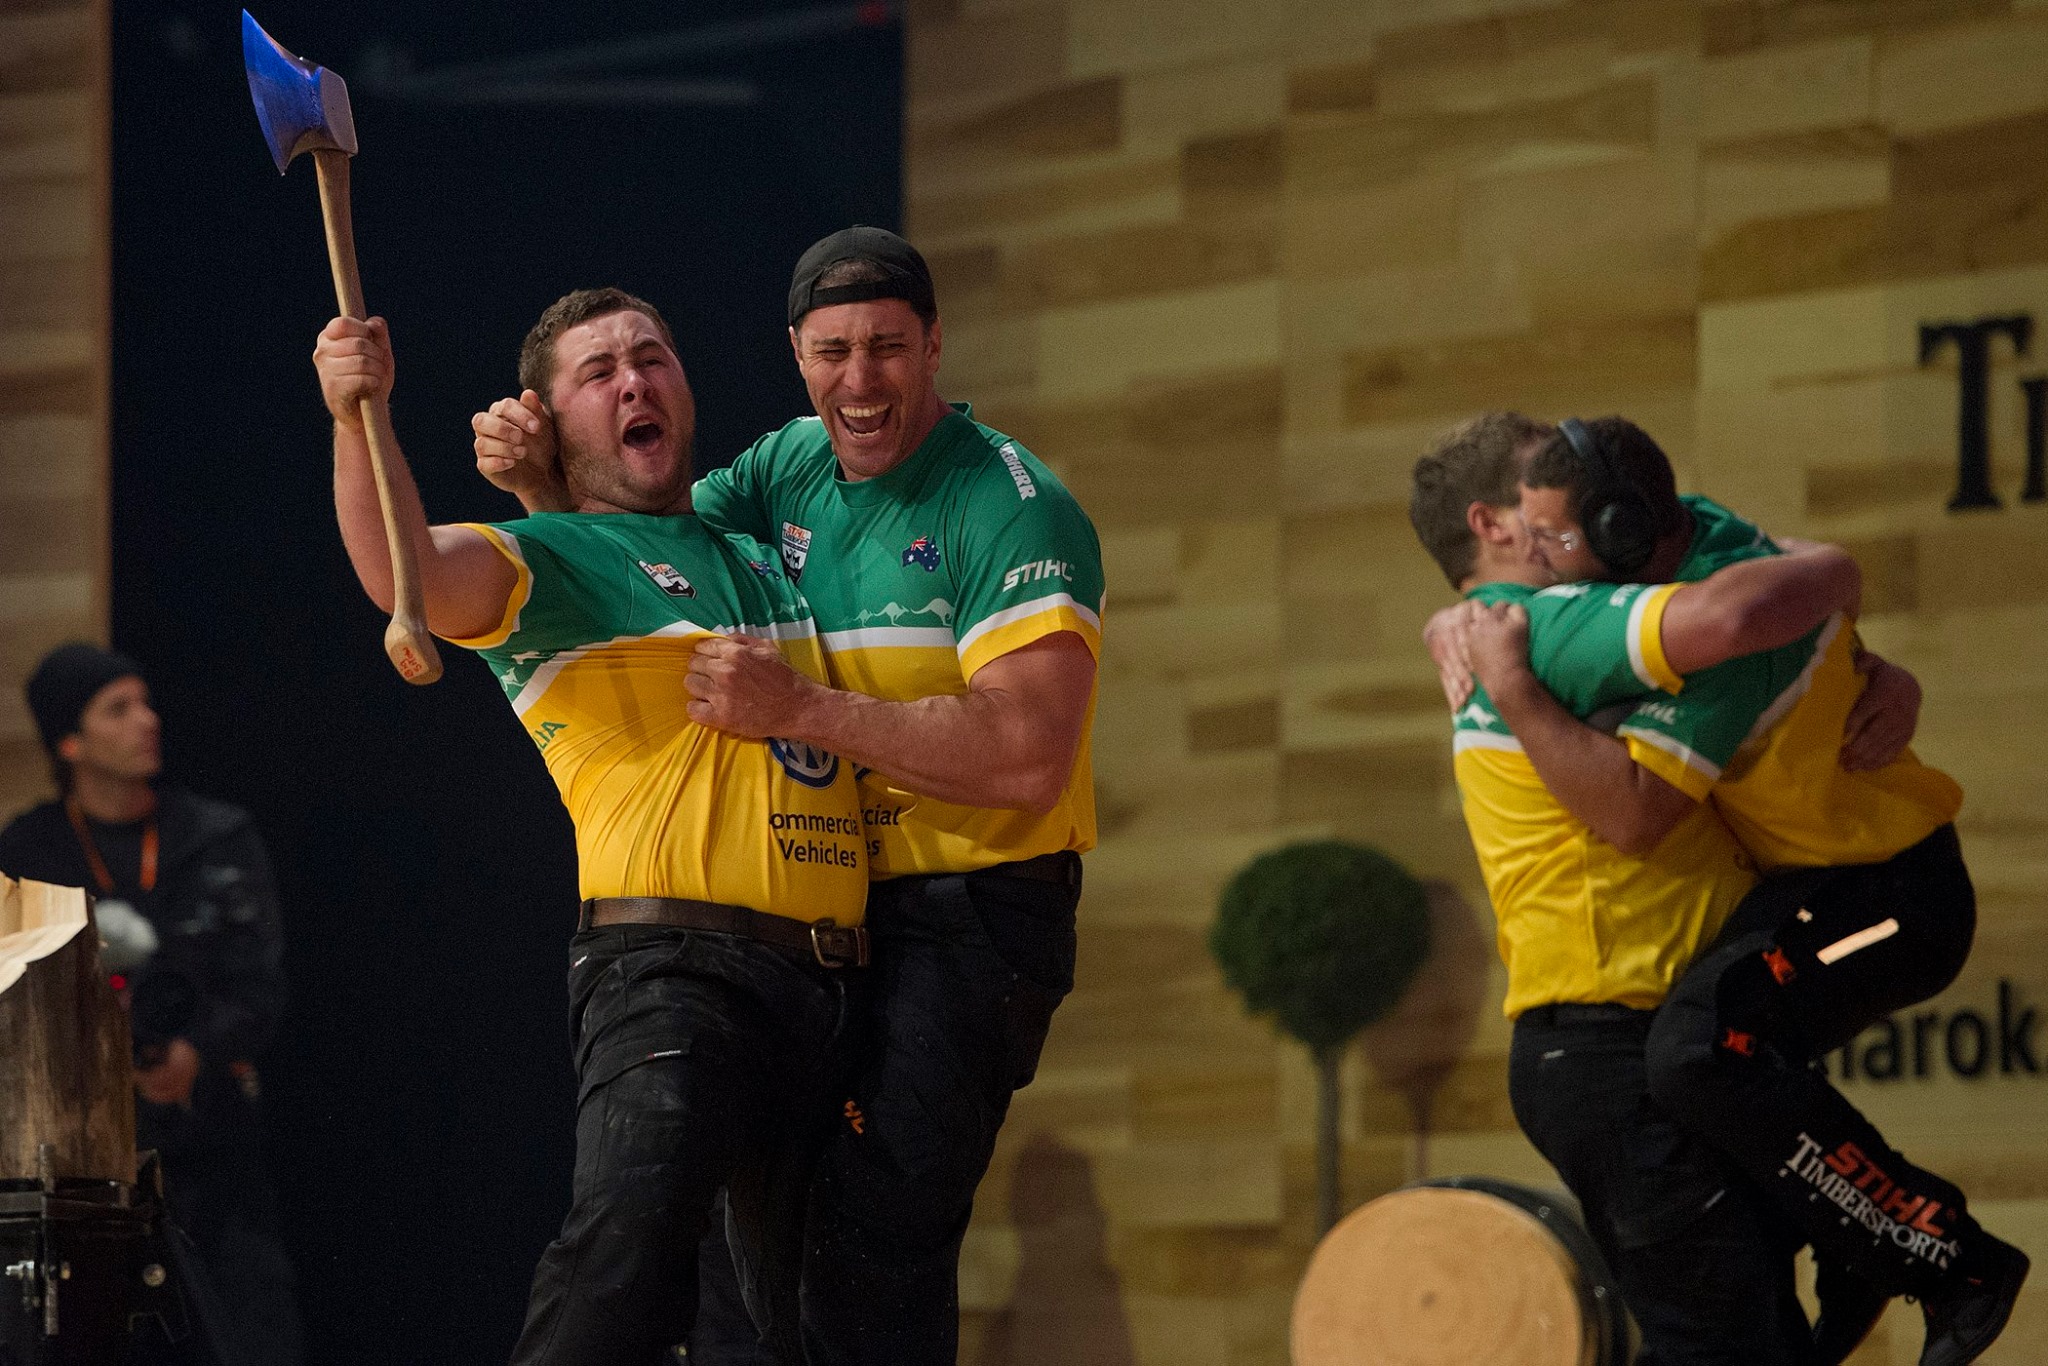 STIHL Timbersports VB - Ausztrália a világbajnok, a magyar csapat nem tudta legyőzni Kanadát